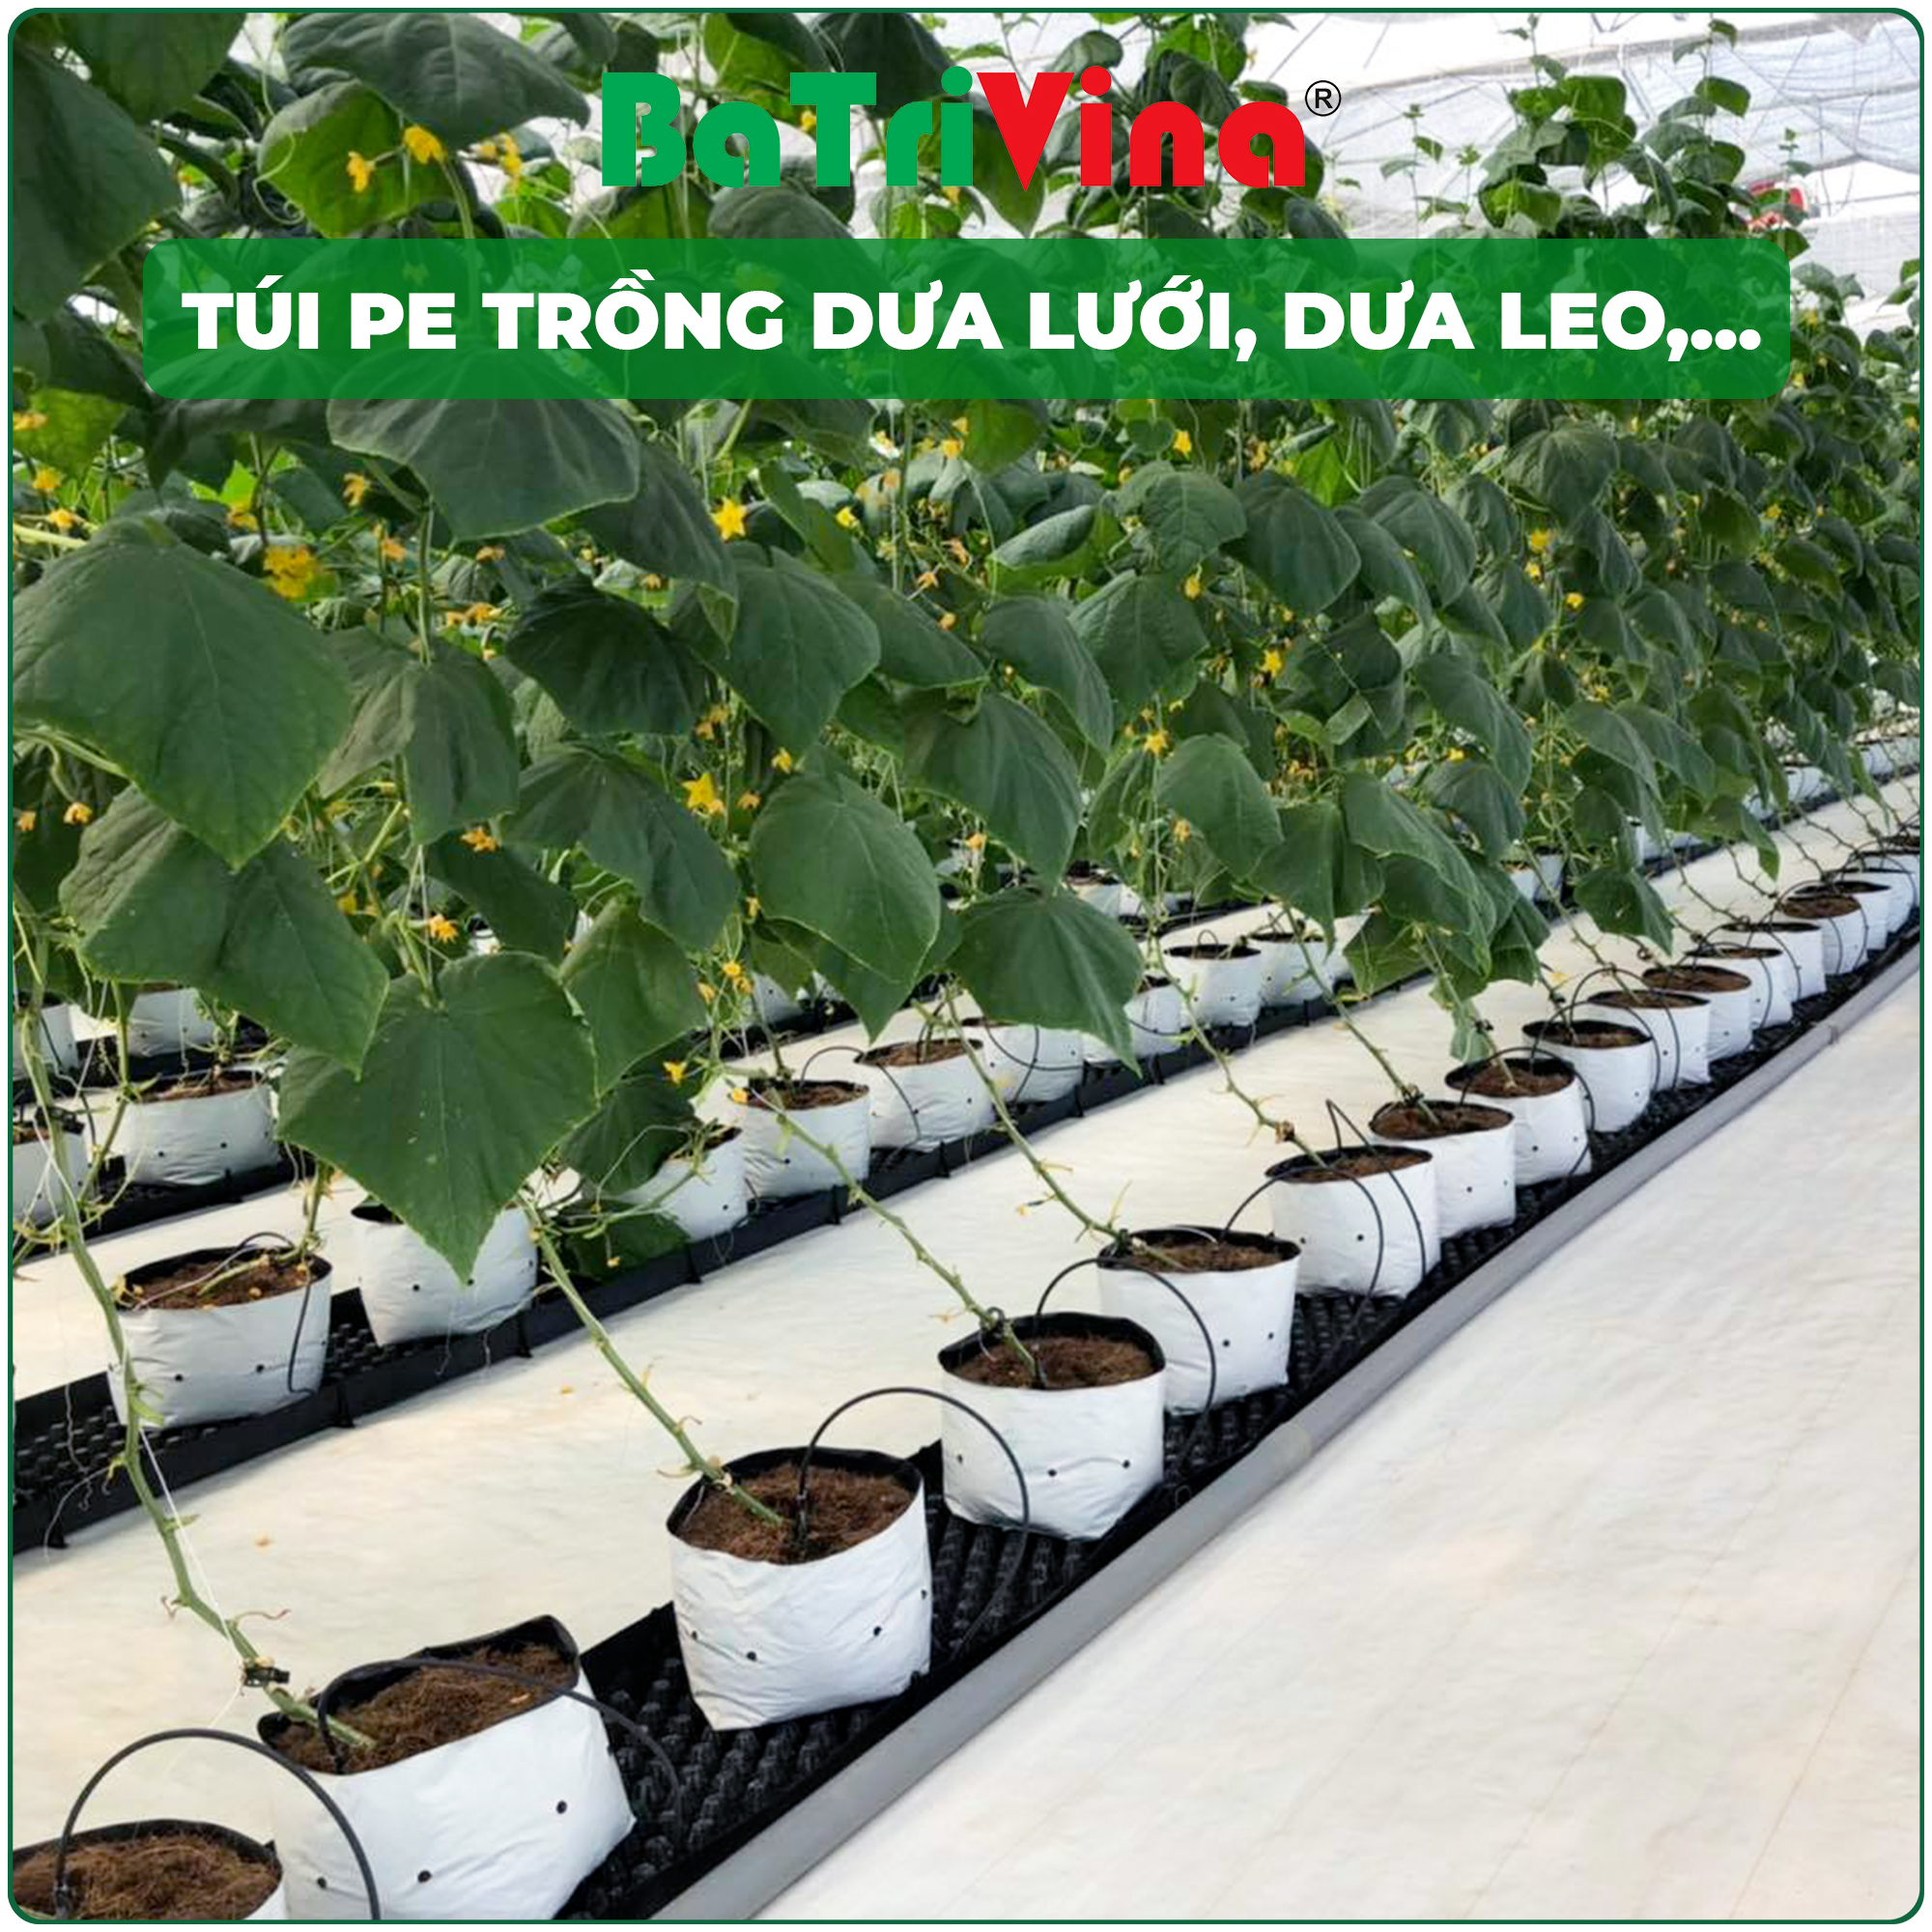 Túi PE 2 lớp trắng đen, trồng cây dưới lưới, dưa leo, cà chua,... nông nghiệp nhà màng (Giá theo 1kg)